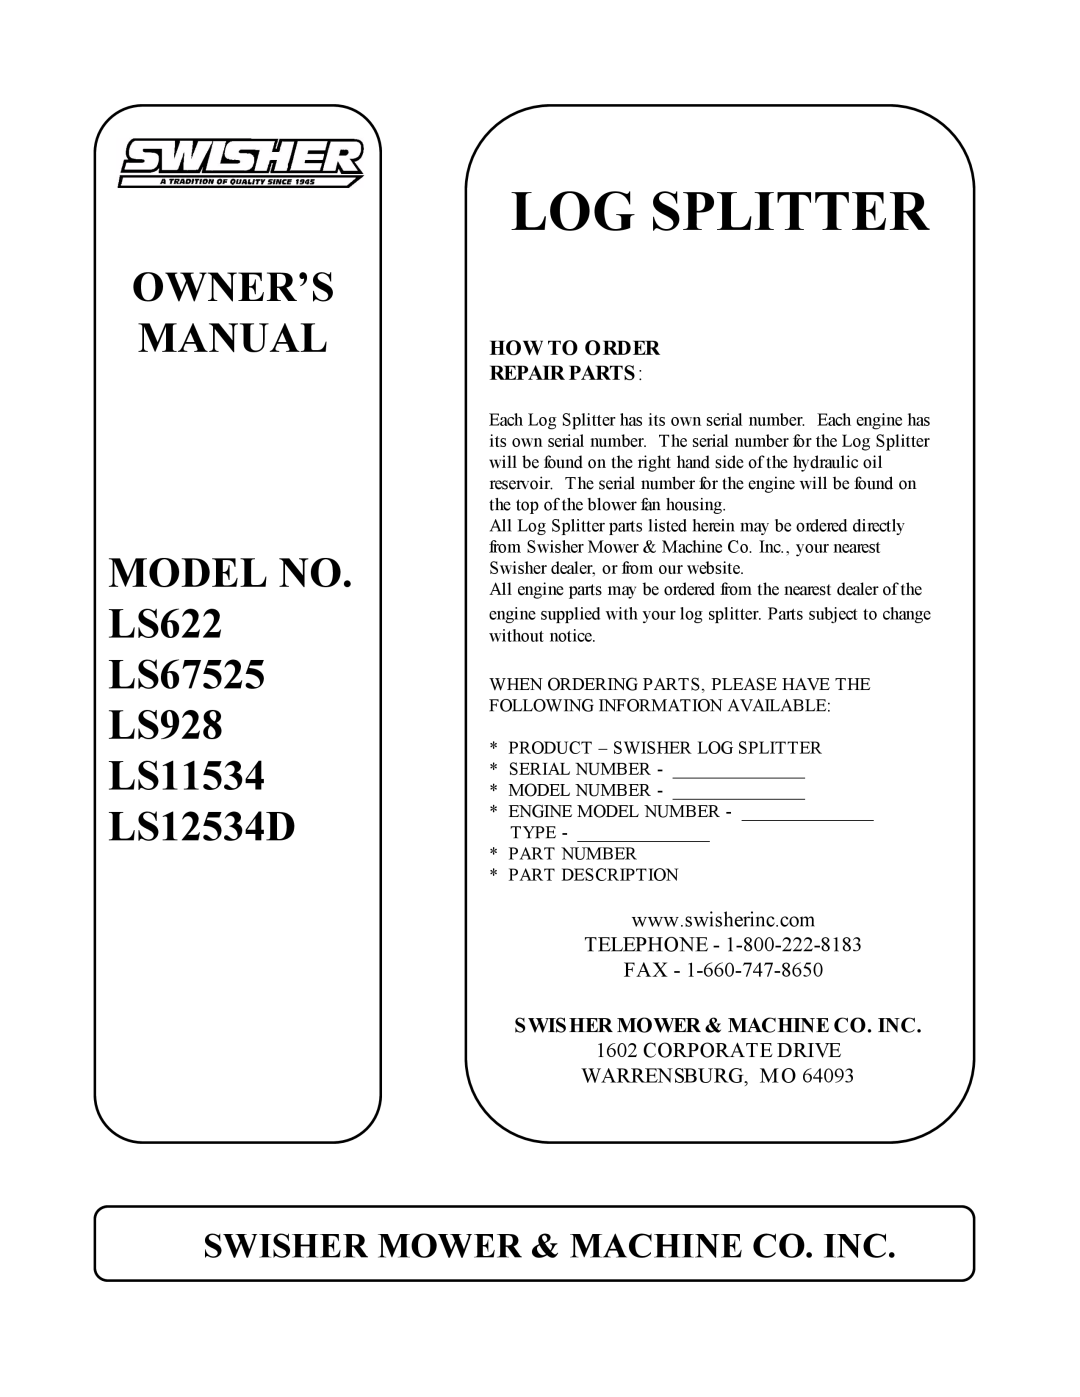 Swisher owner manual Log Splitter, MODEL NO. LS622 LS67525 LS928 LS11534 LS12534D, Swisher Mower & Machine Co. Inc 